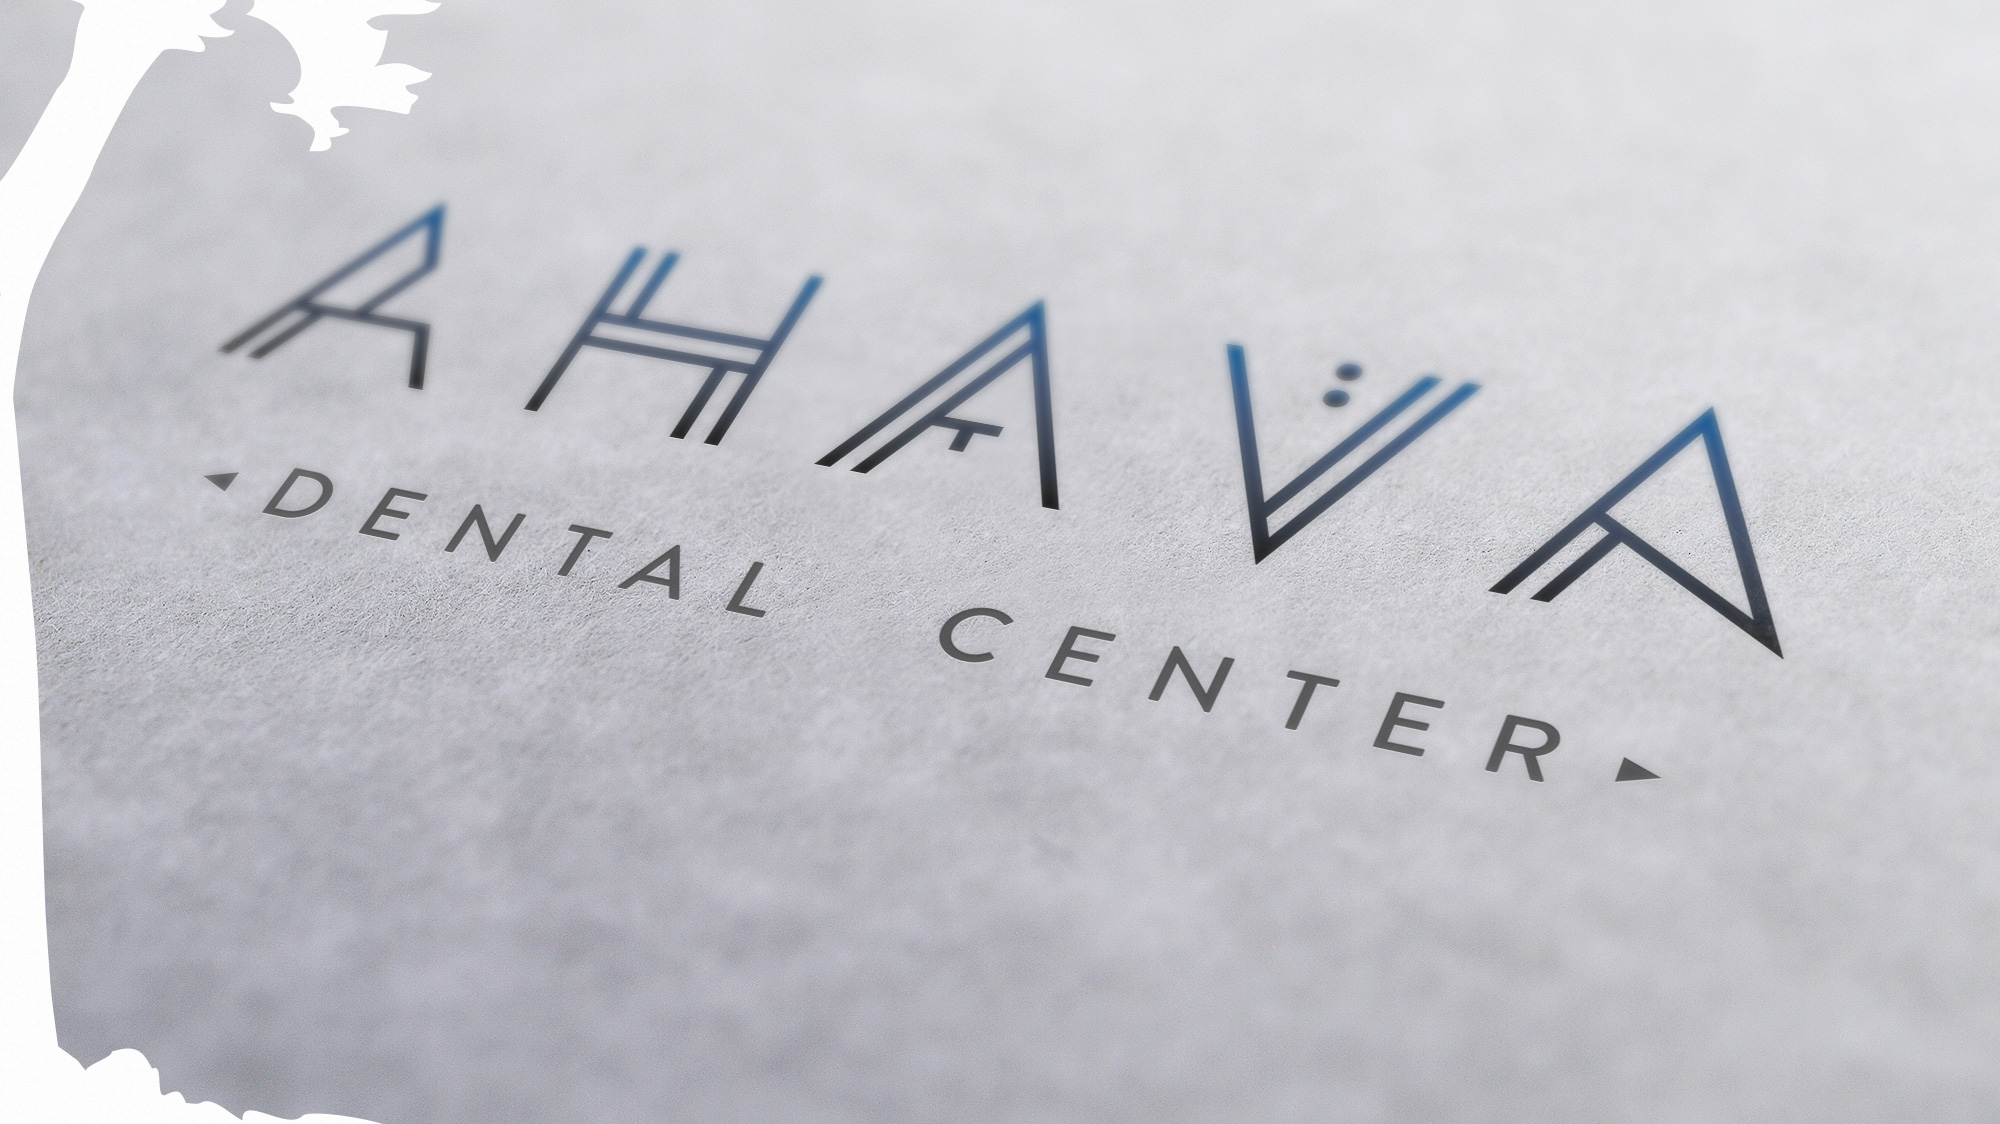 Ahava Dental Center Branding